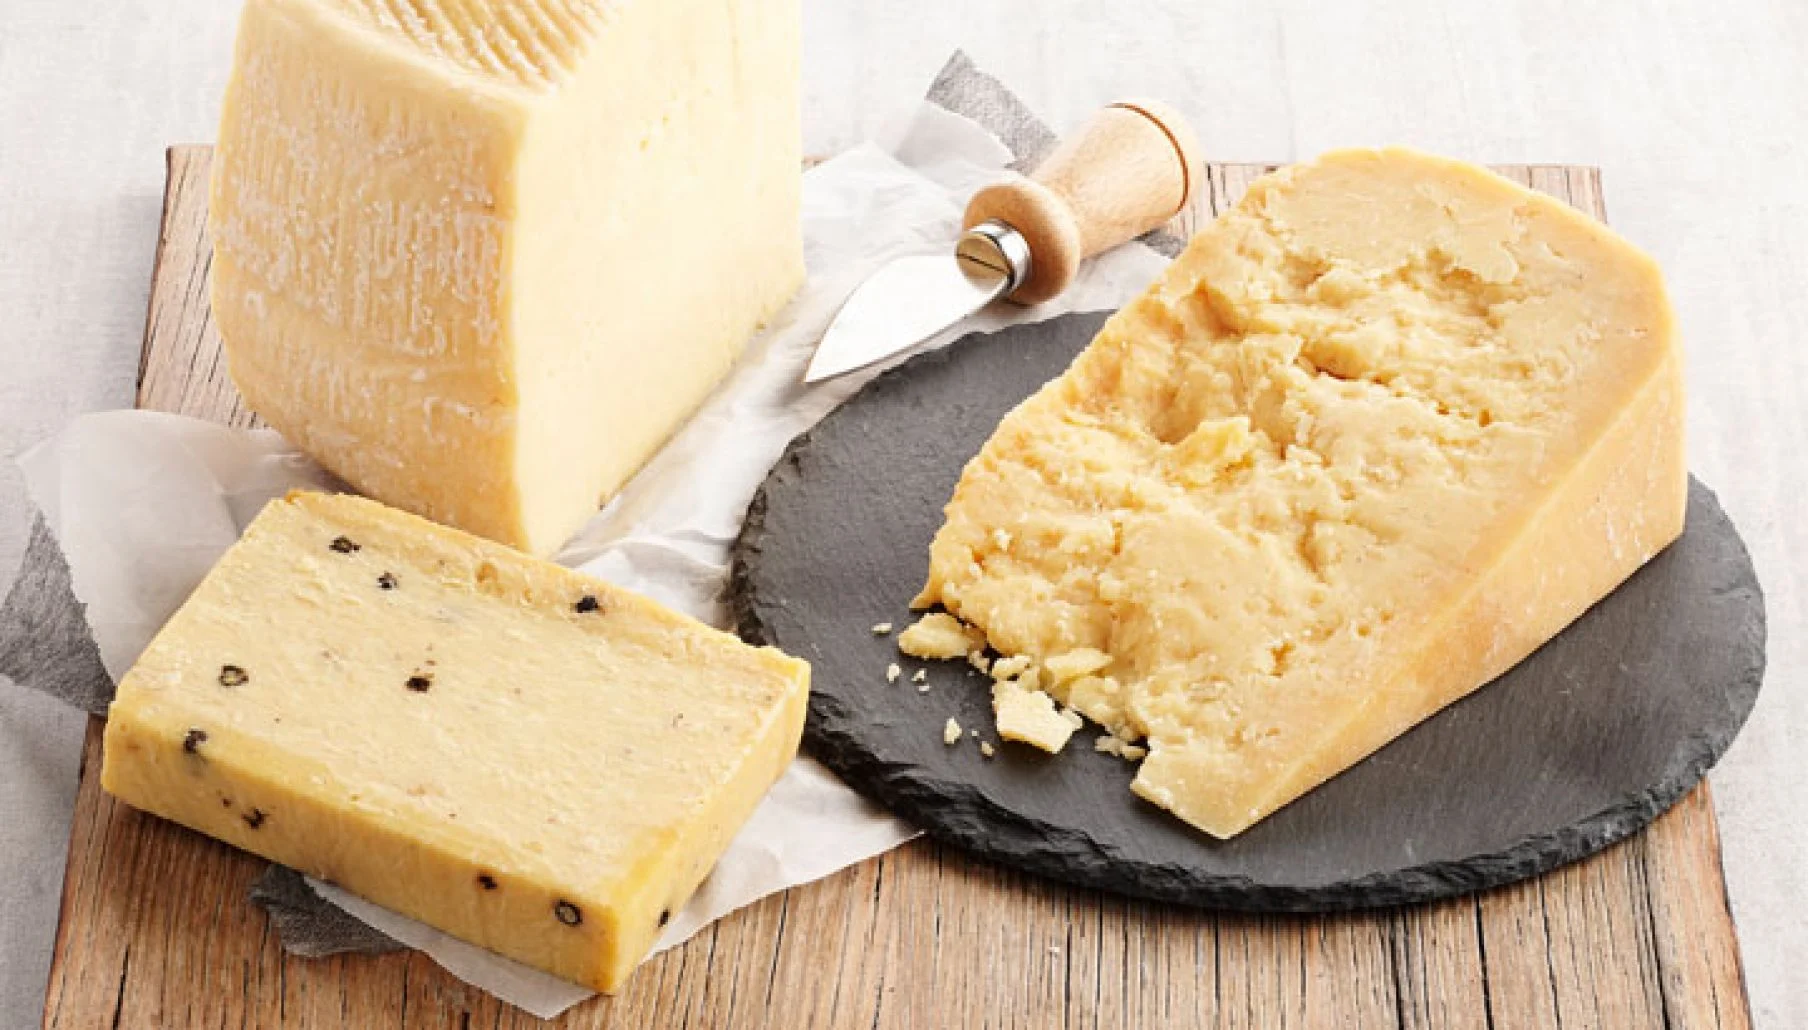 طريقة تحضير الجبنة الرومي في المنزل بحبة من البطاطس وطعم احلى من الجاهزة